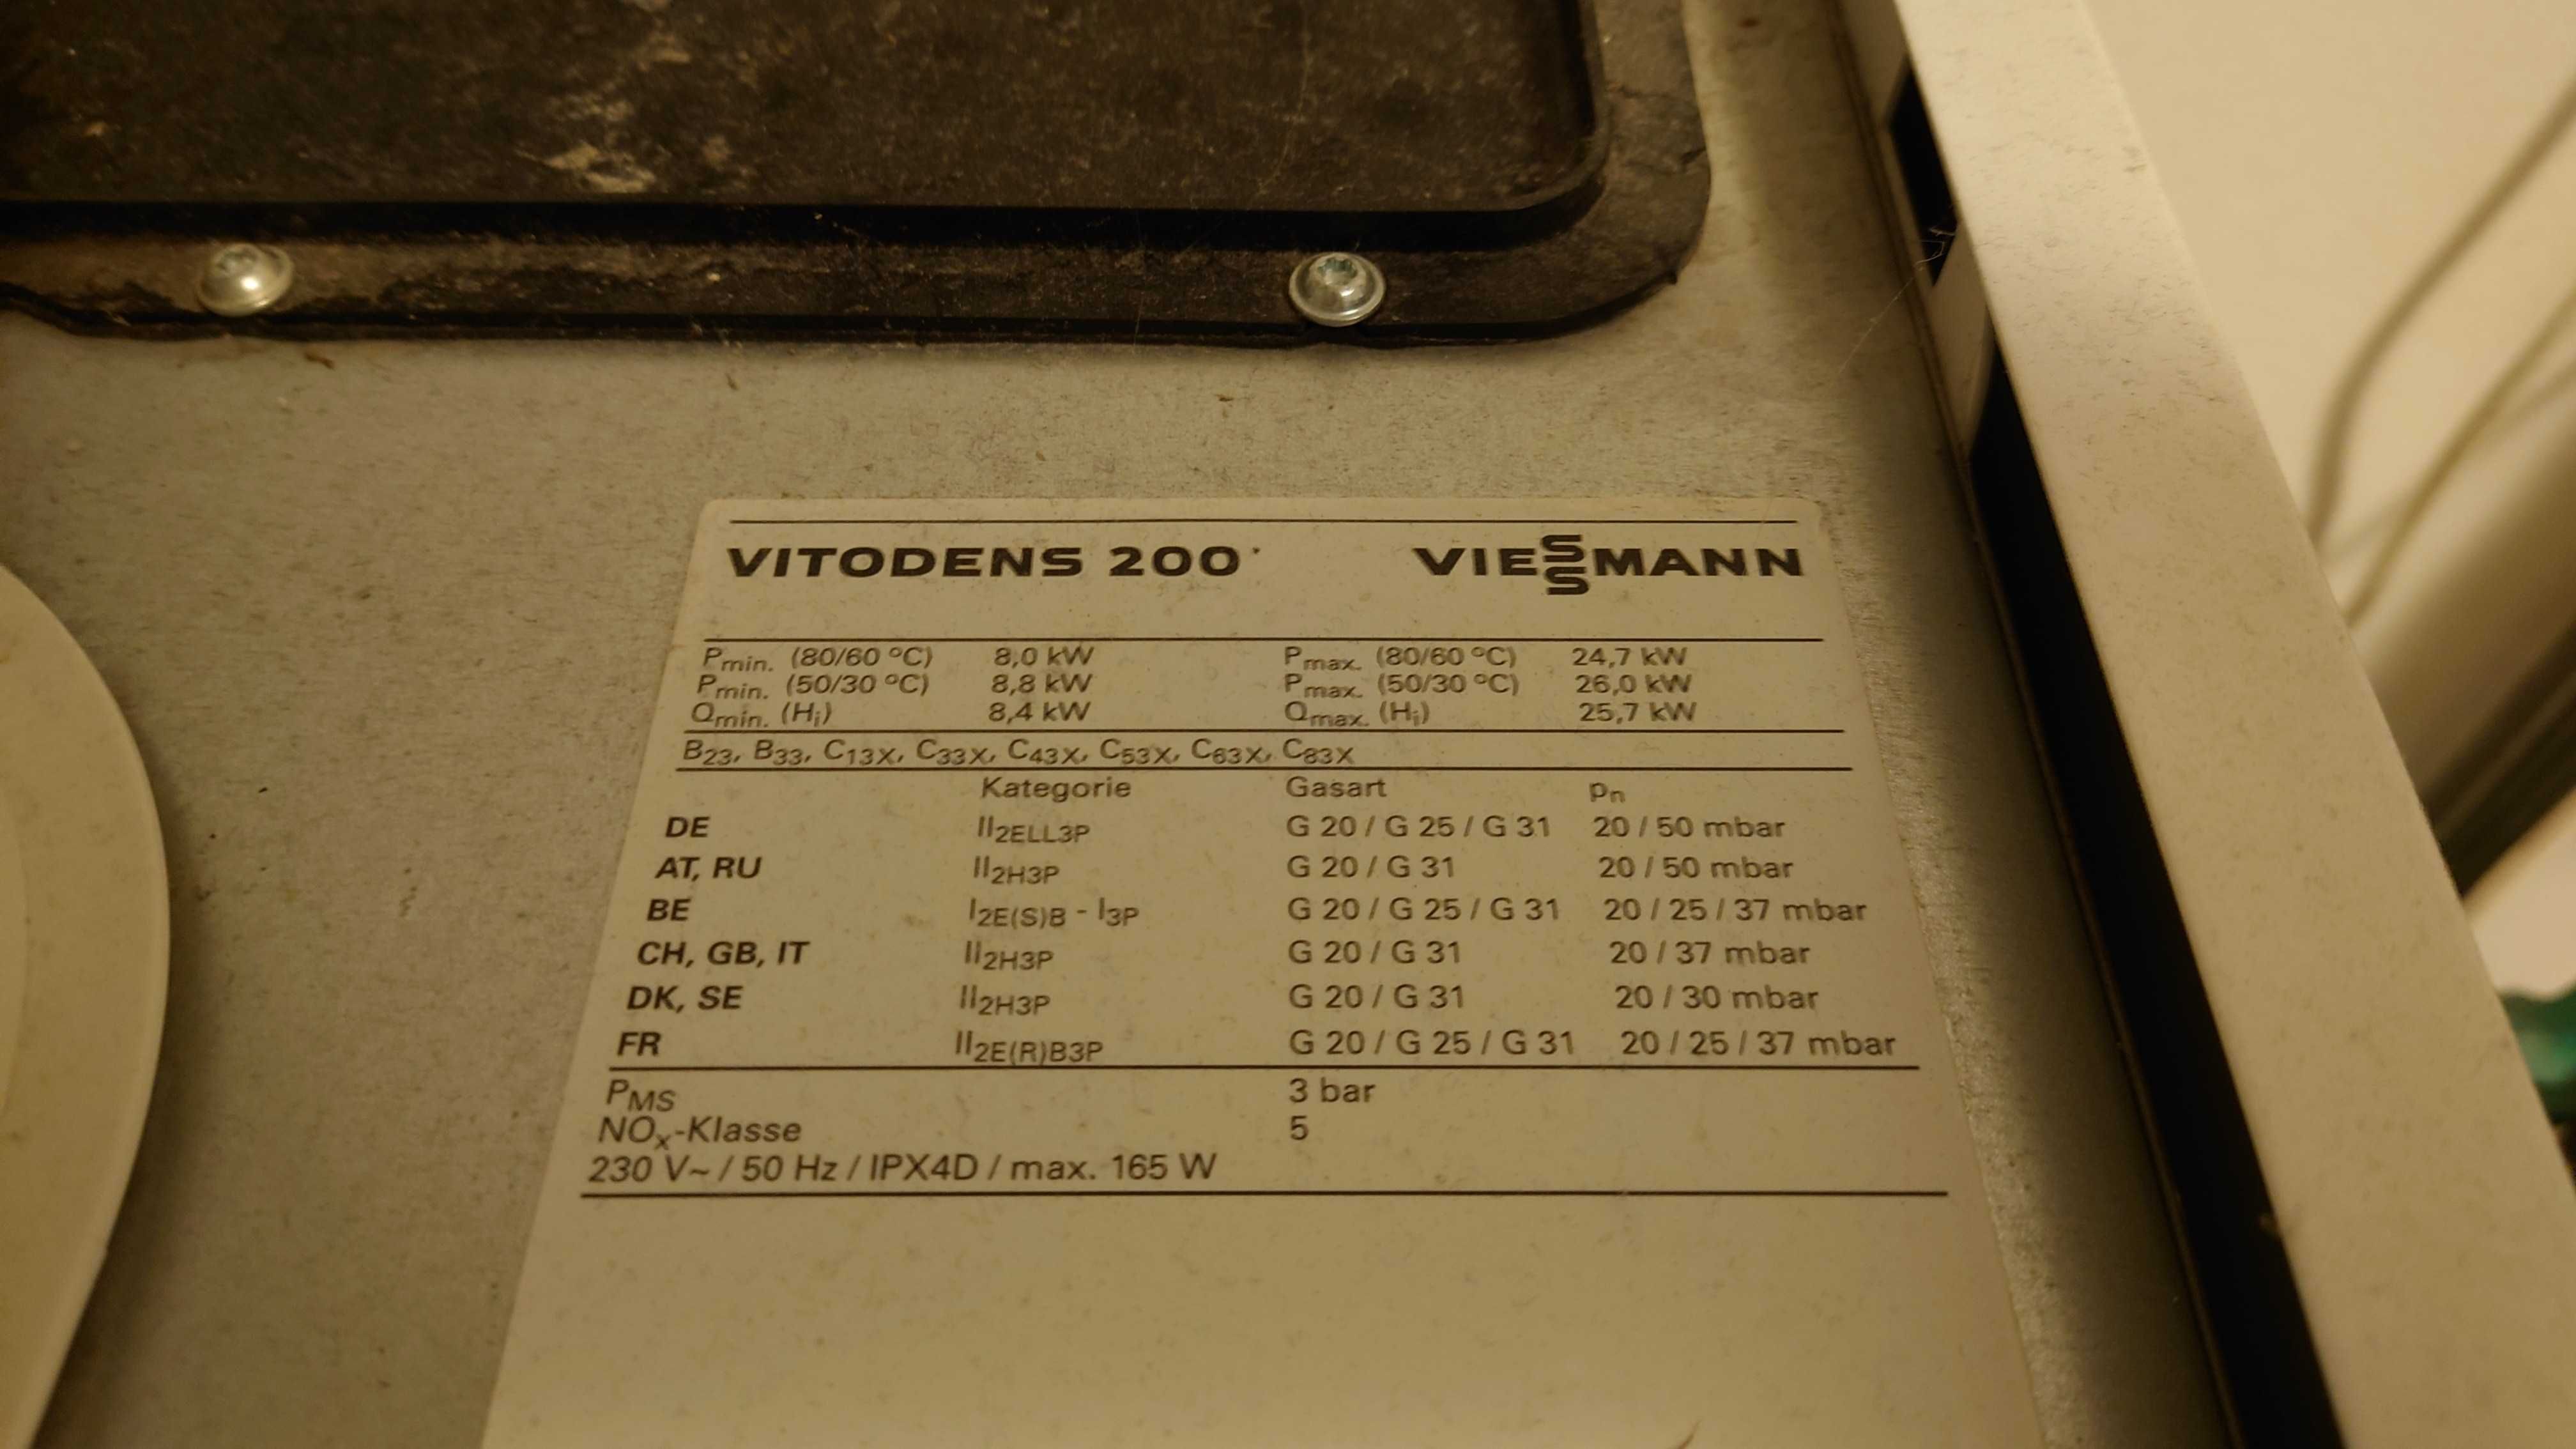 Sprzedam kocioł kondensacyjny Vitodens 200